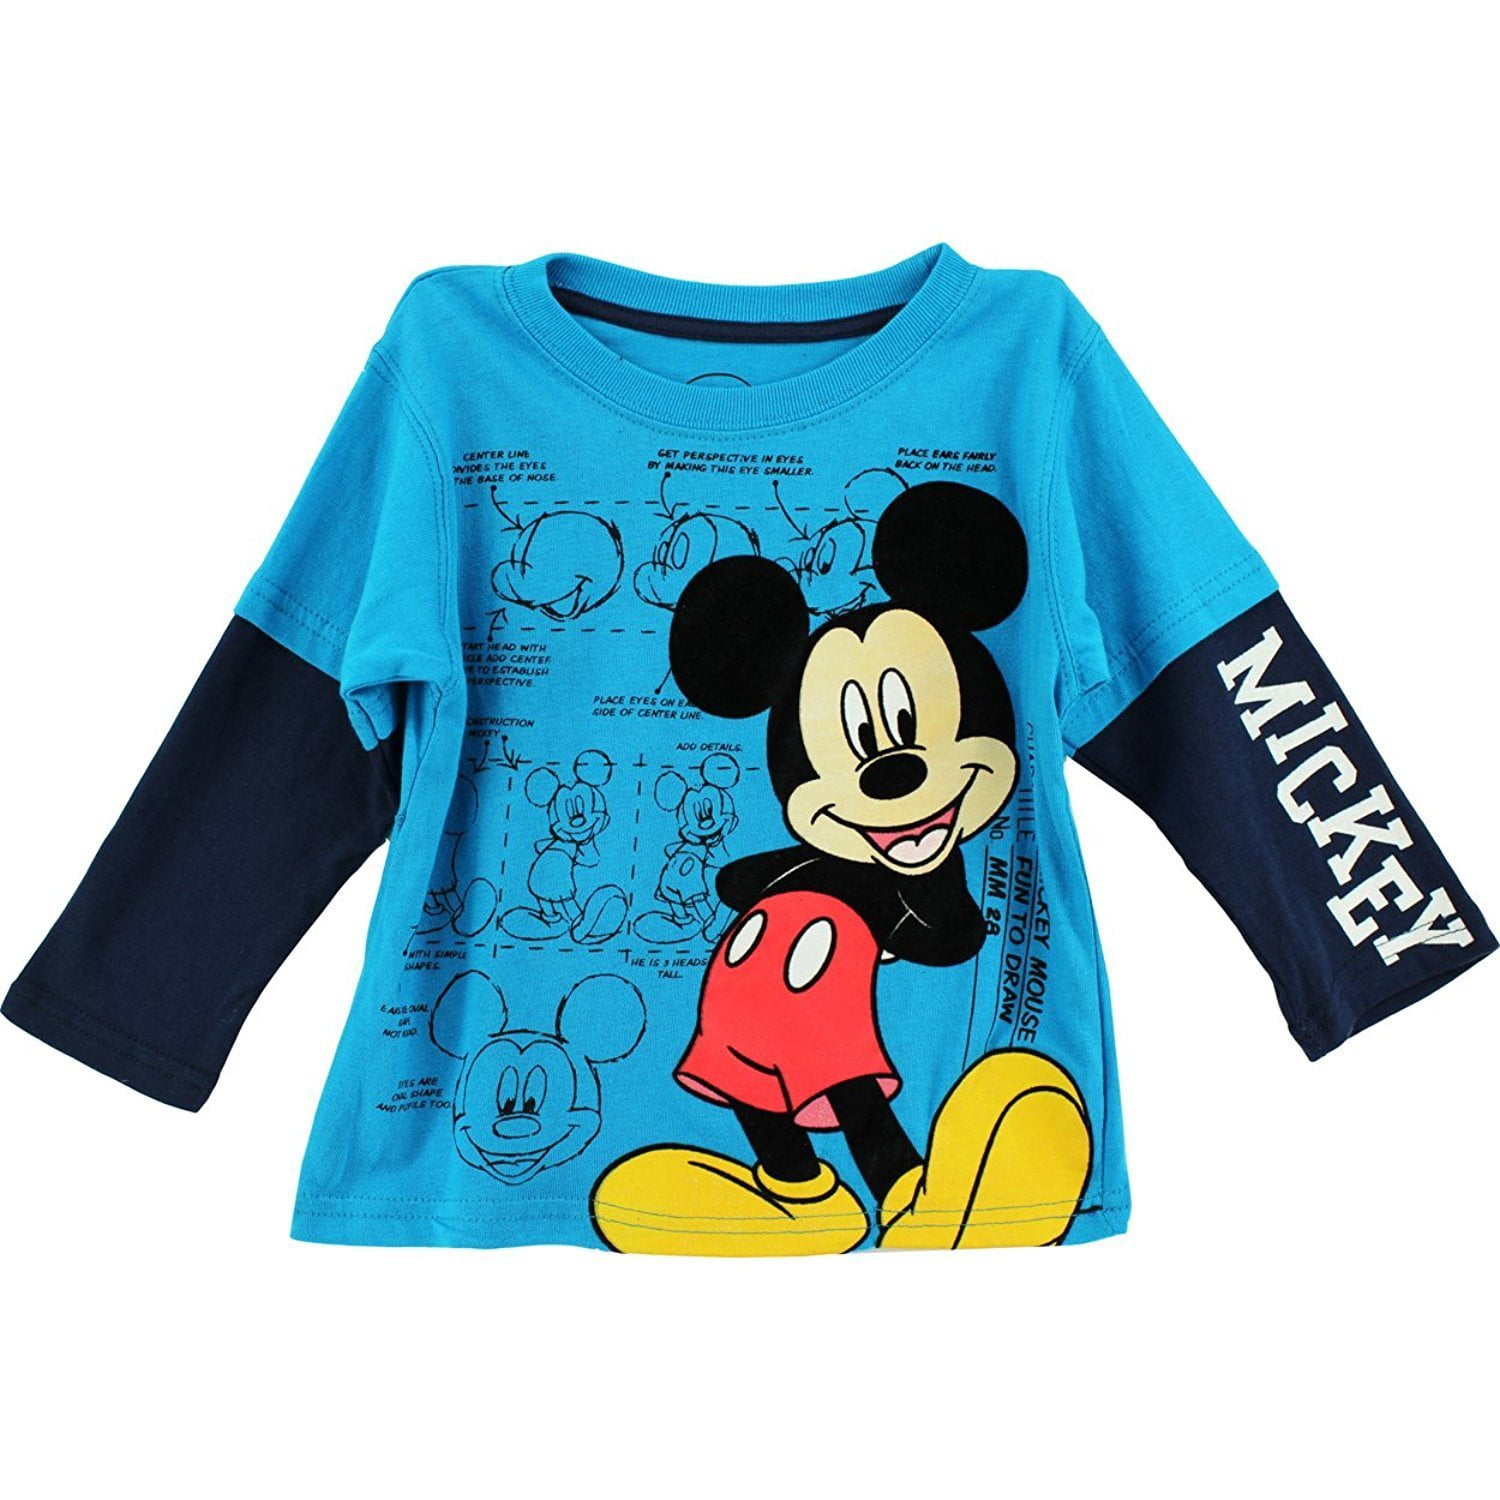 Disney Disney Mickey Mouse "Fun to Draw" Turquoise